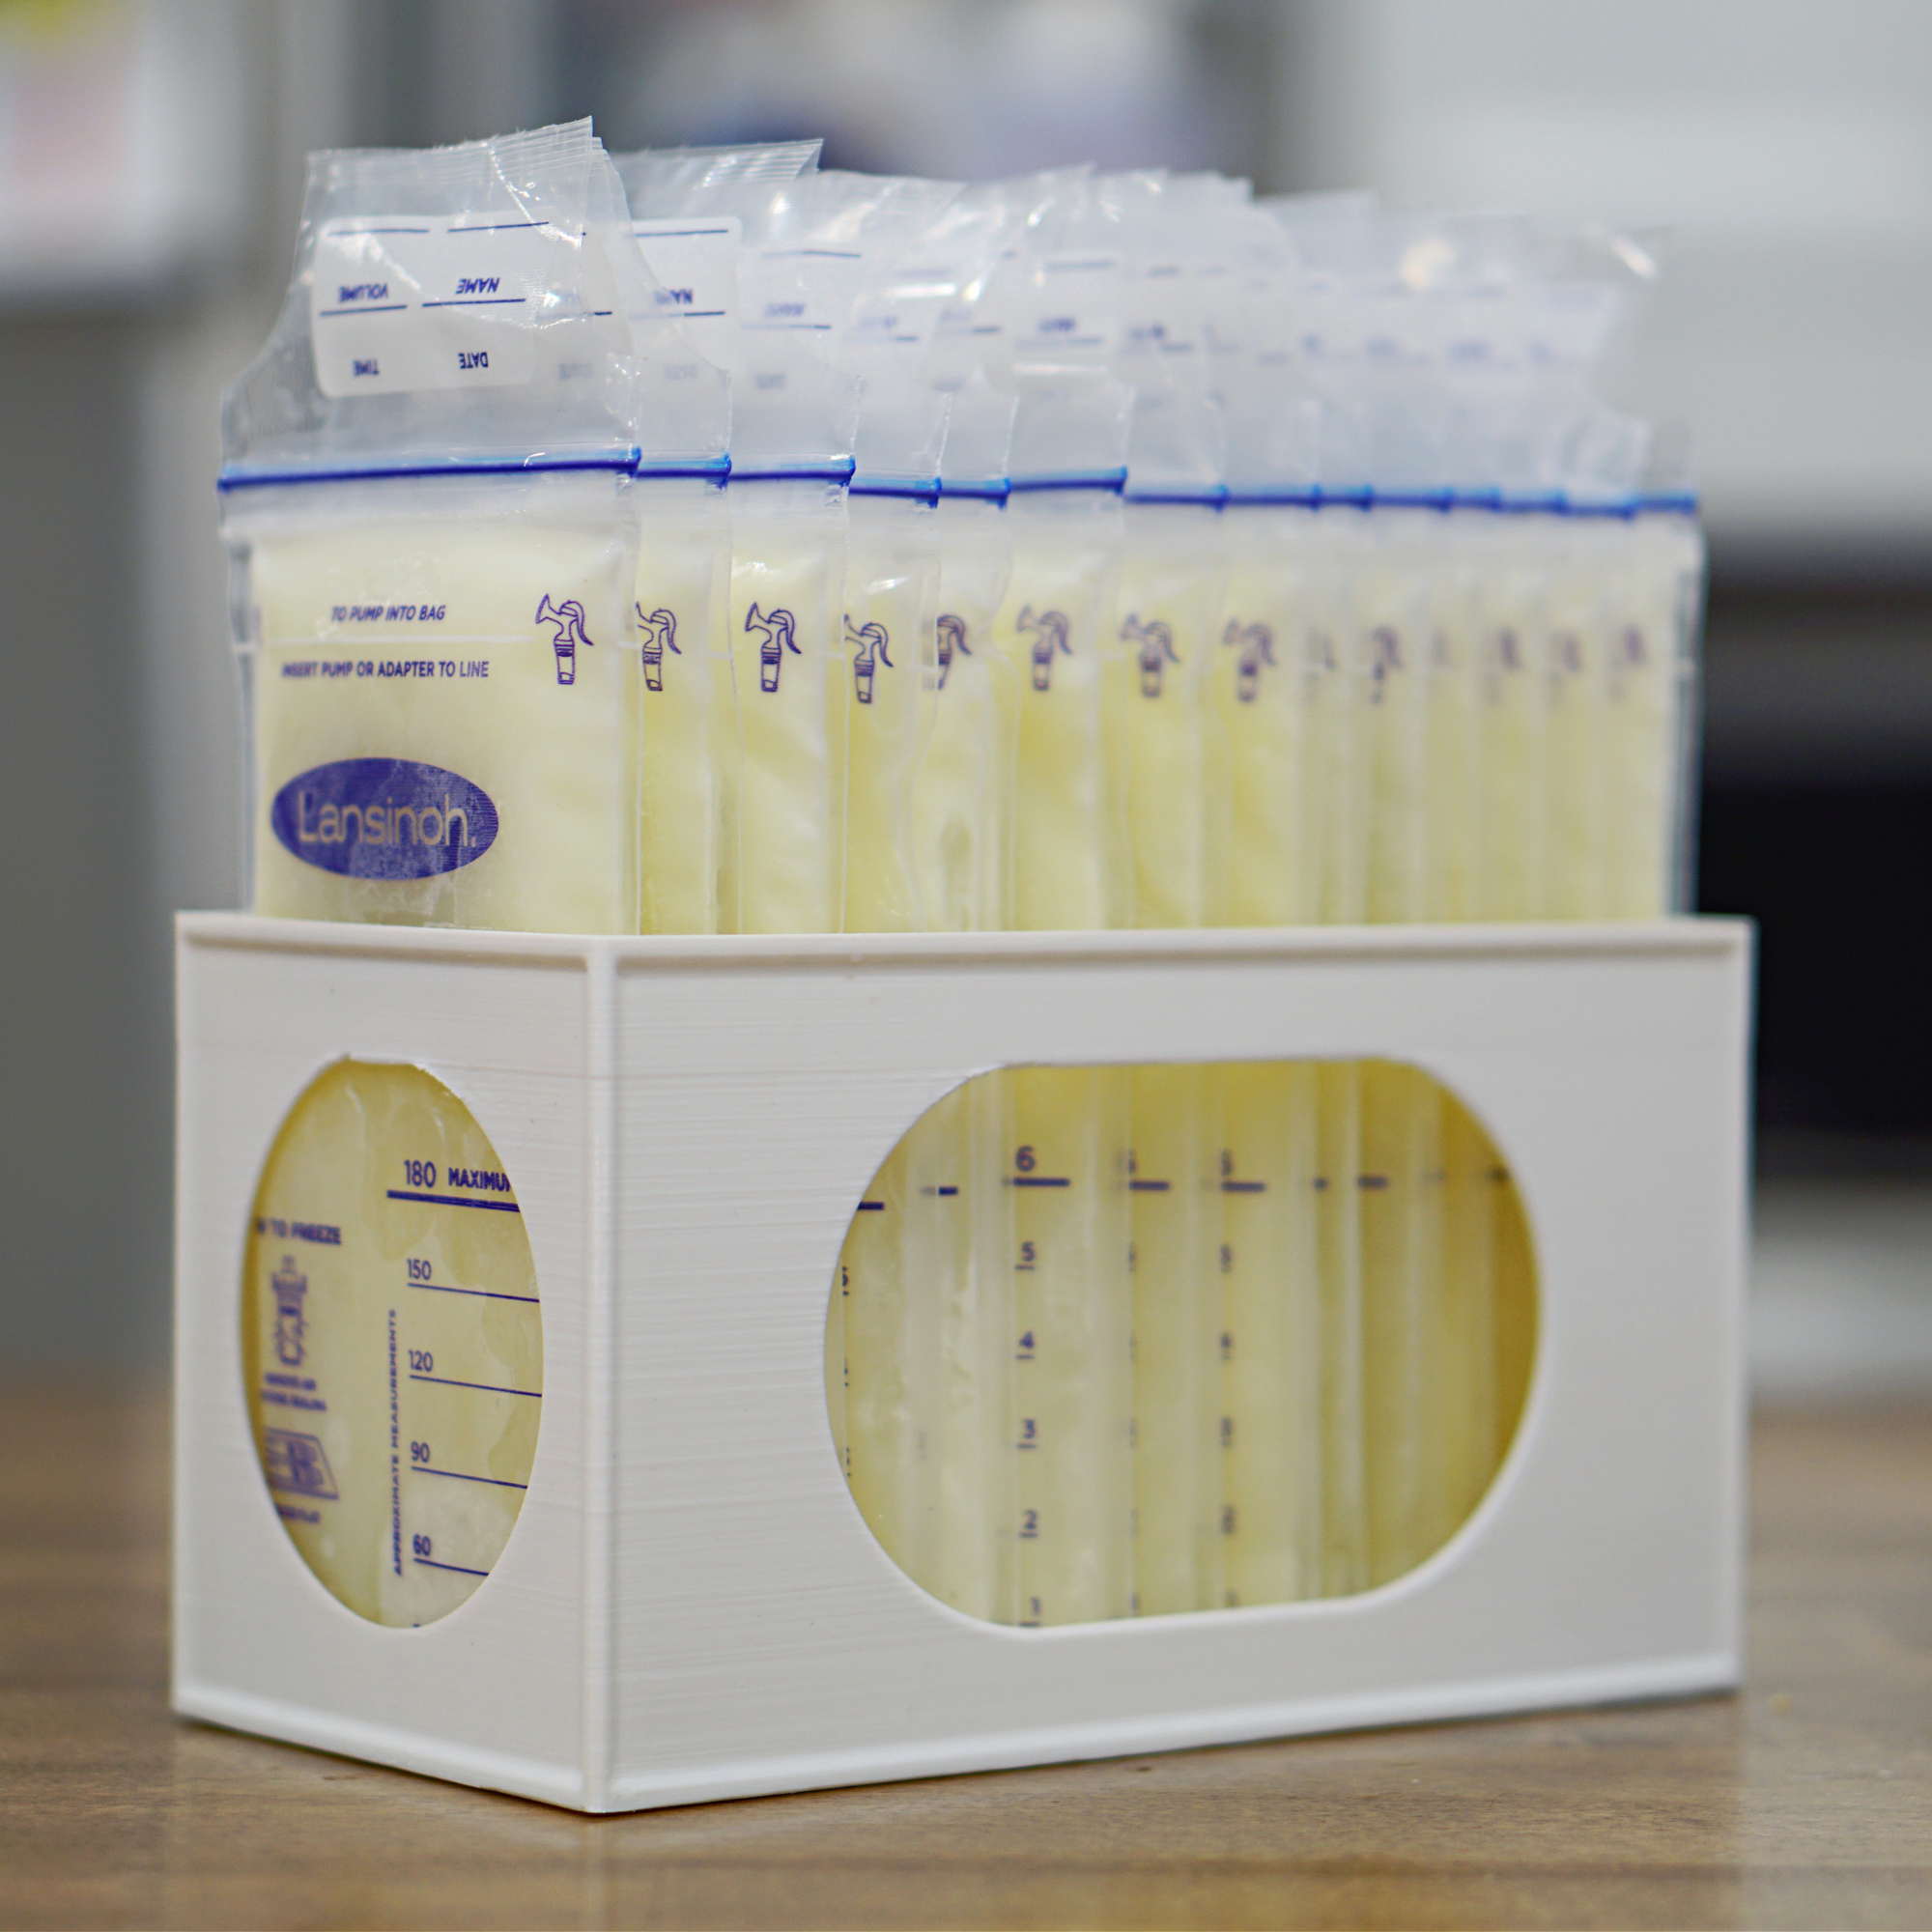 Lansinoh Breast Milk Storage Bags & Adapters